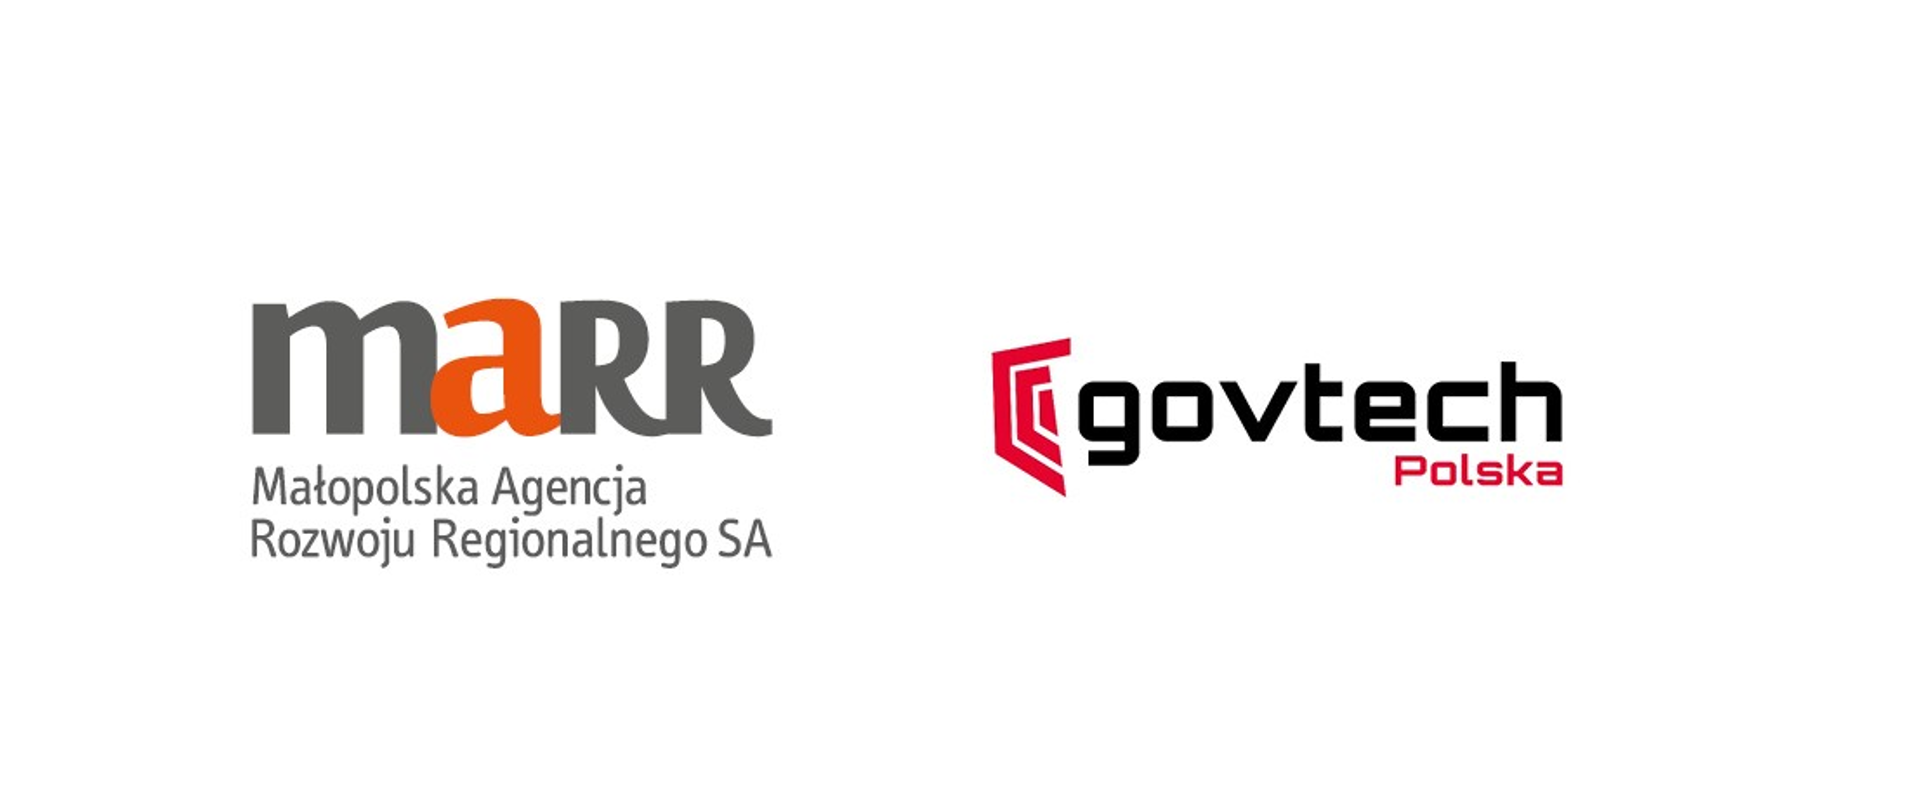 dwa logo obok siebie marr małopolska agencja rozwoju regionalnego sa napis szaro pomarańczowy oraz govtech polska napis czarno czerwony